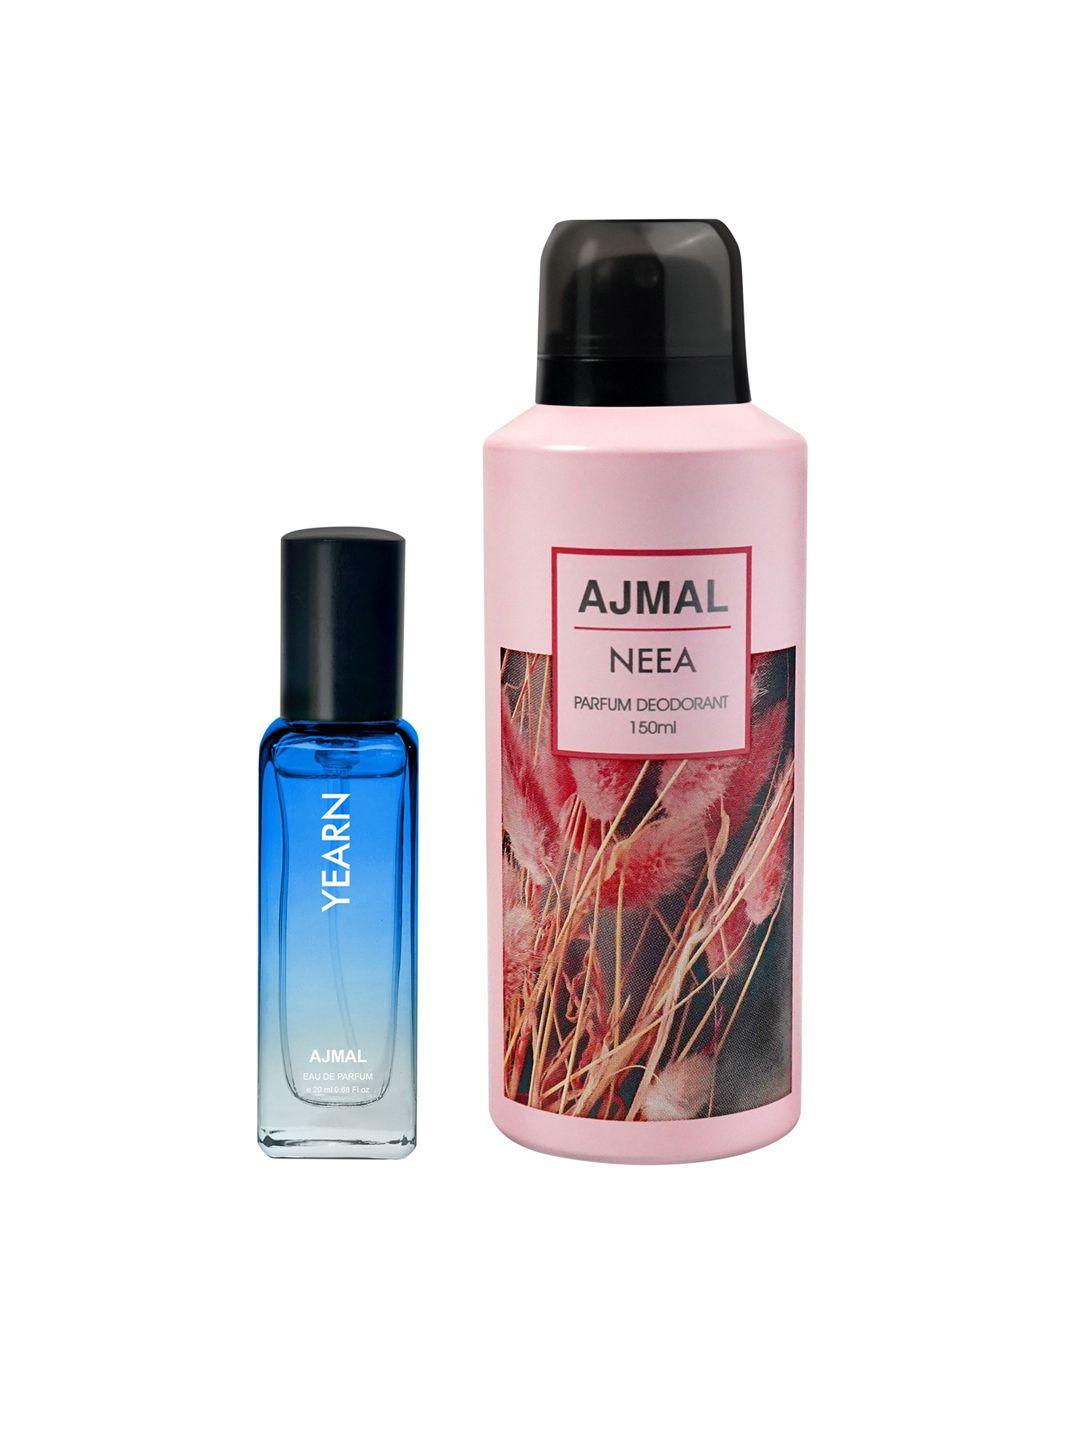 ajmal pack of 2 yearn perfume-20ml + neea deodorant-150ml